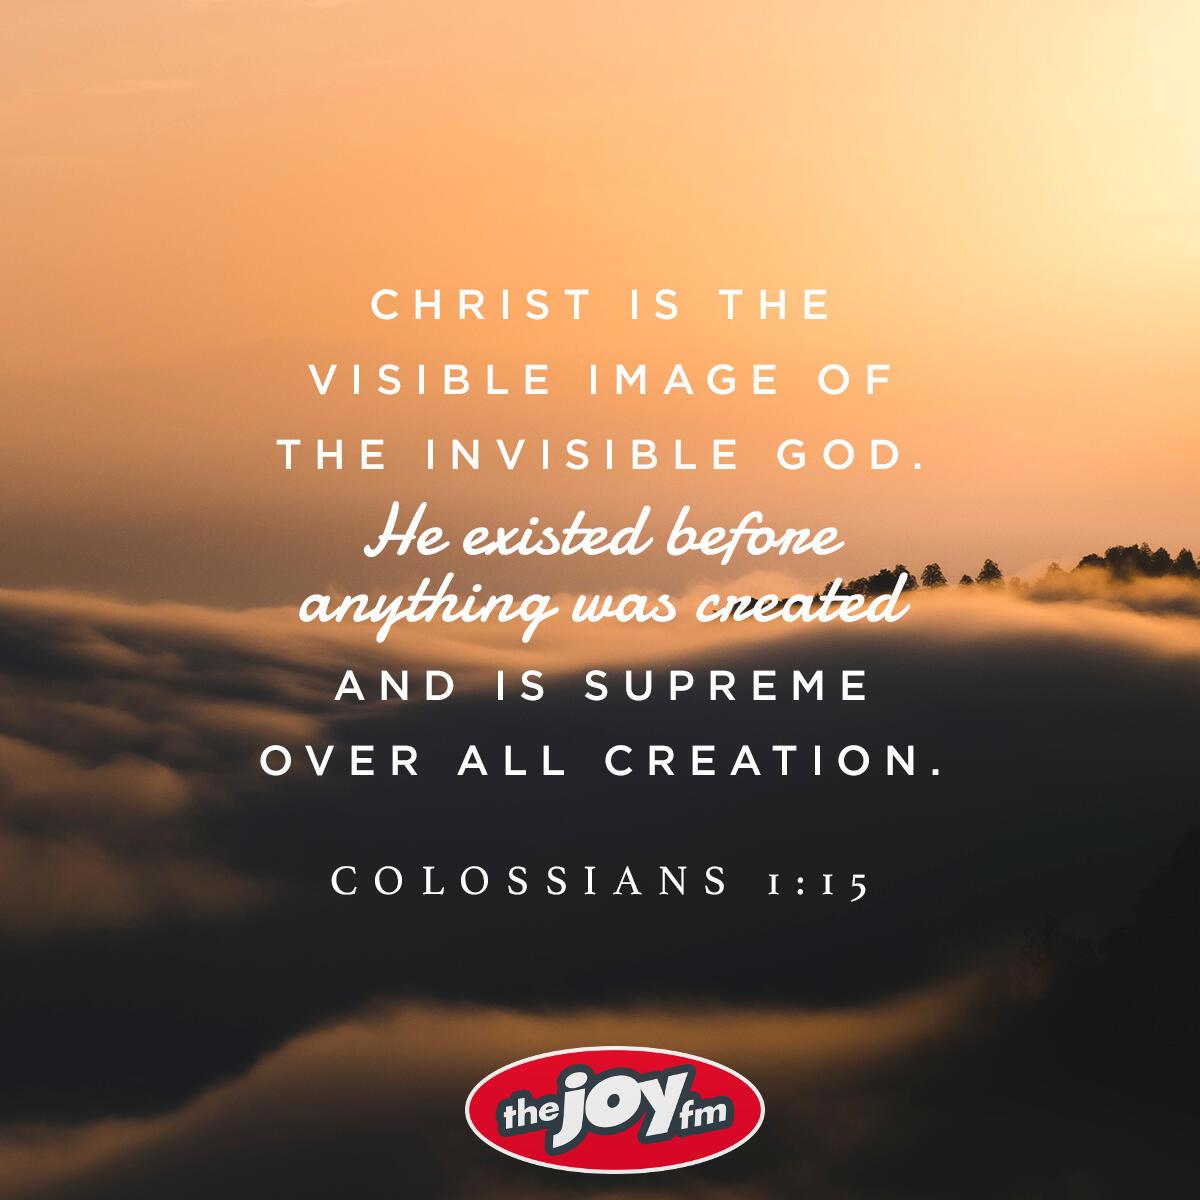 Colossians 1:15